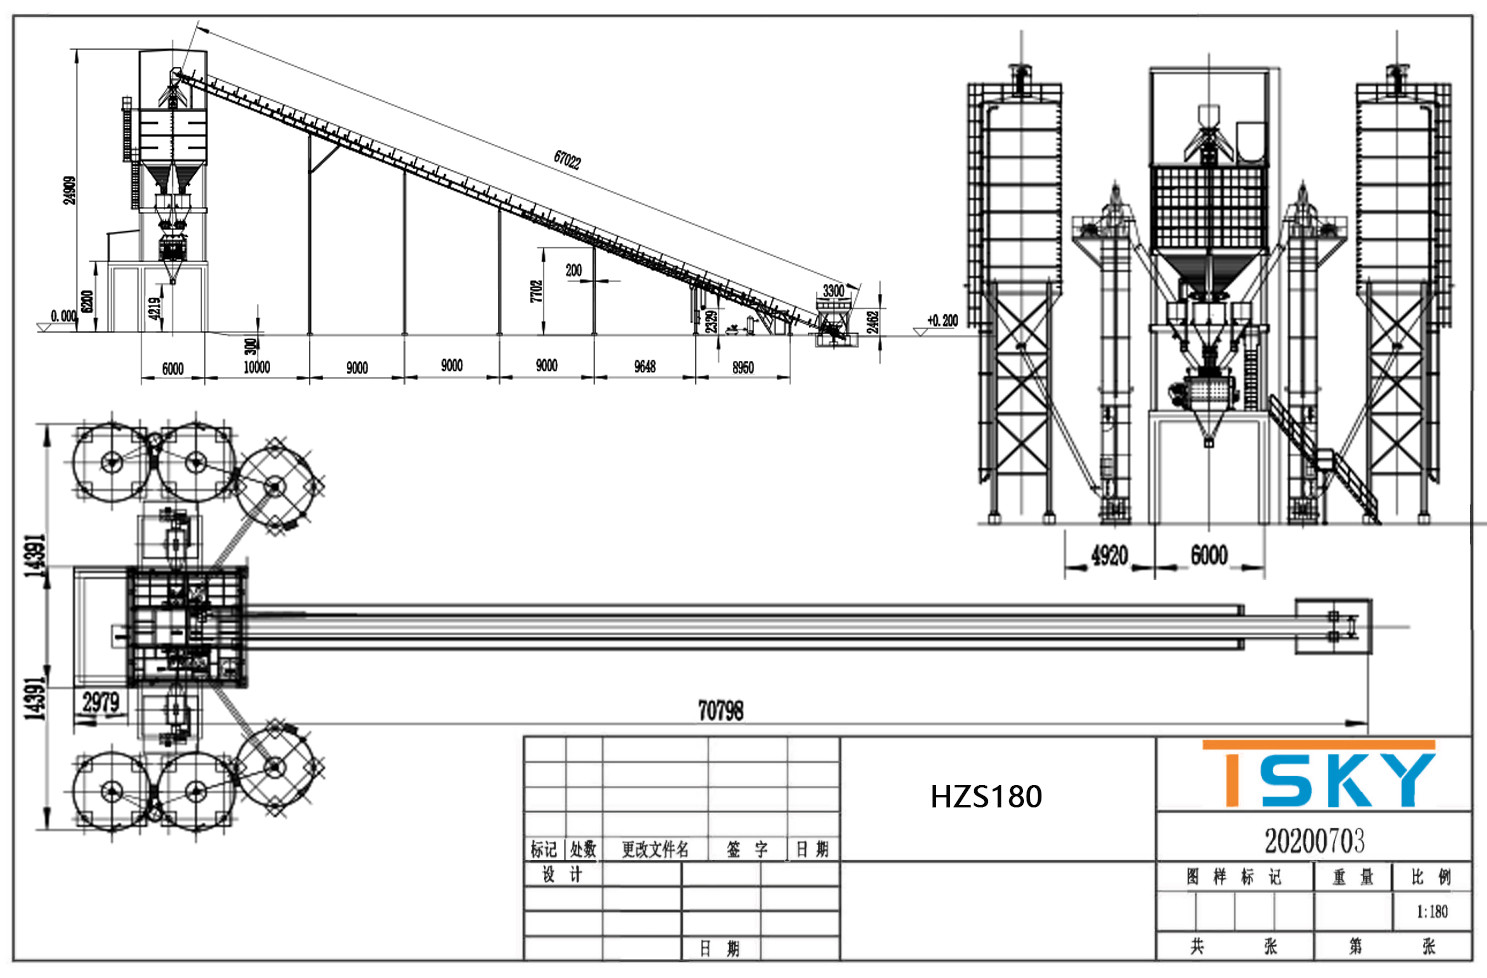 Modular Structure 180m3/H HZS180 RMC Concrete Plant